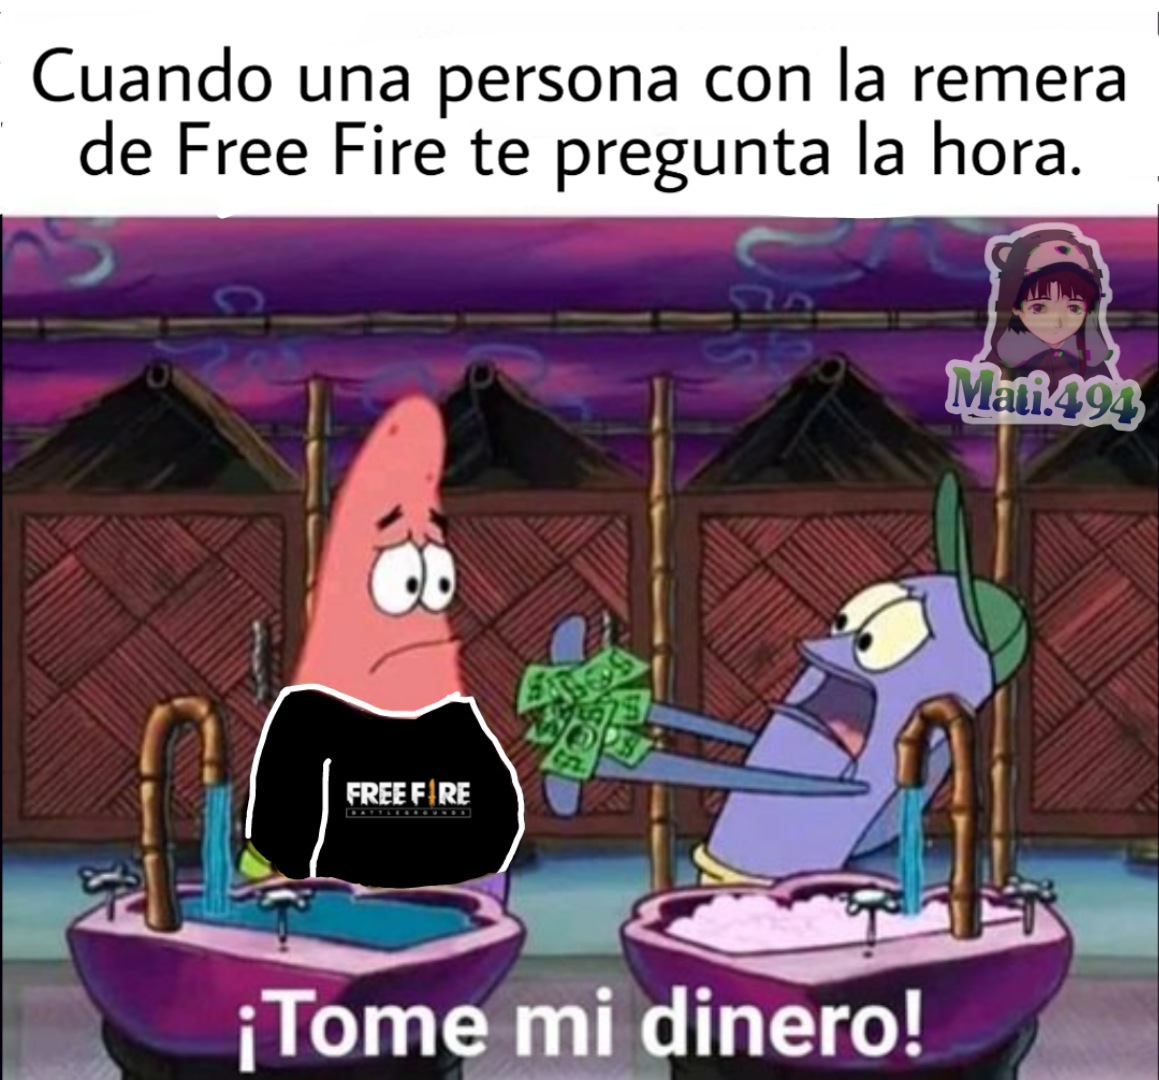 Free Fire malo - meme